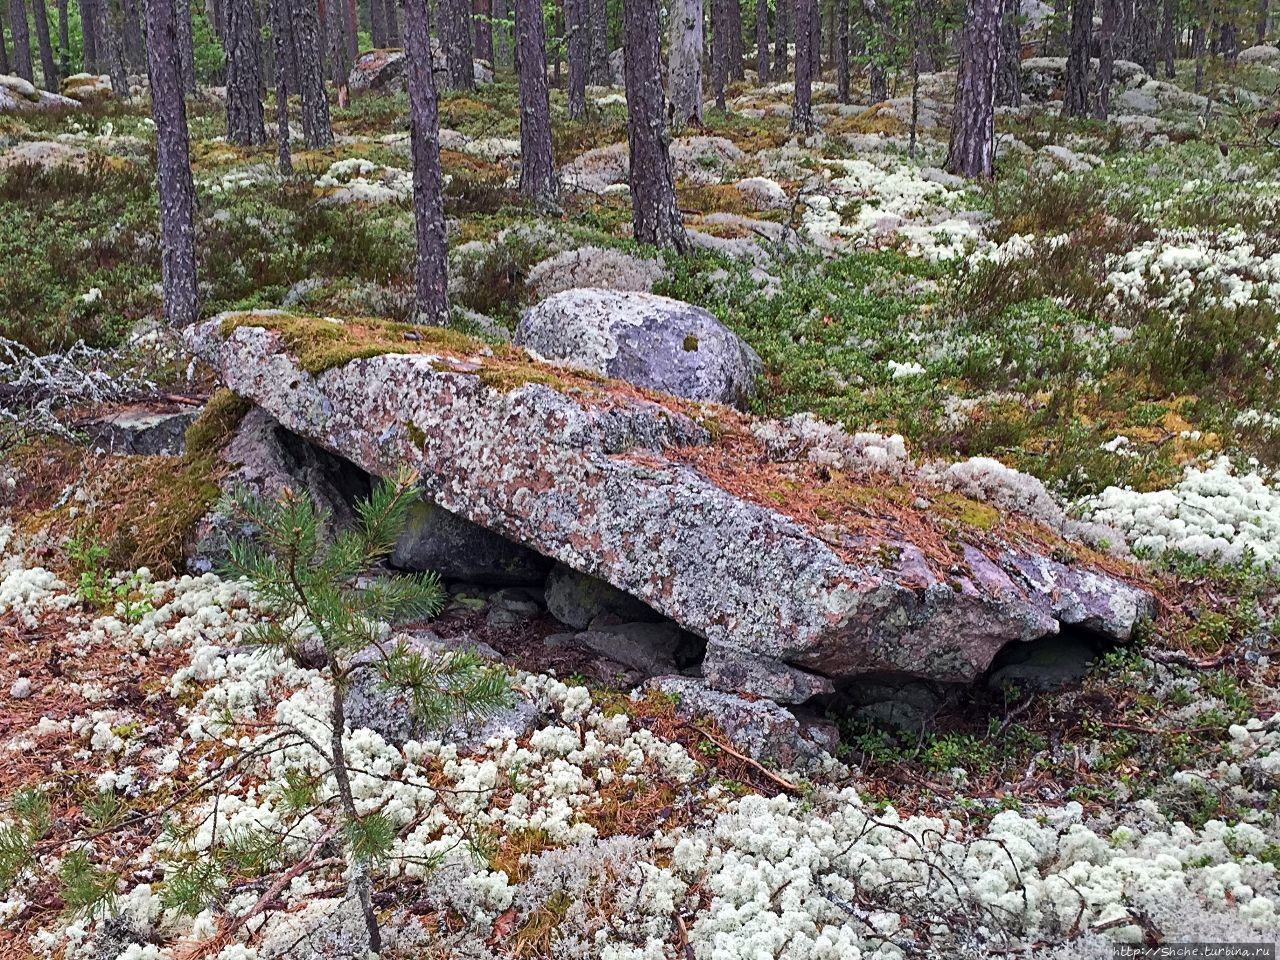 Погребальный комплекс Саммаллахденмяки Саммаллахденмяки (поселение бронзового века), Финляндия